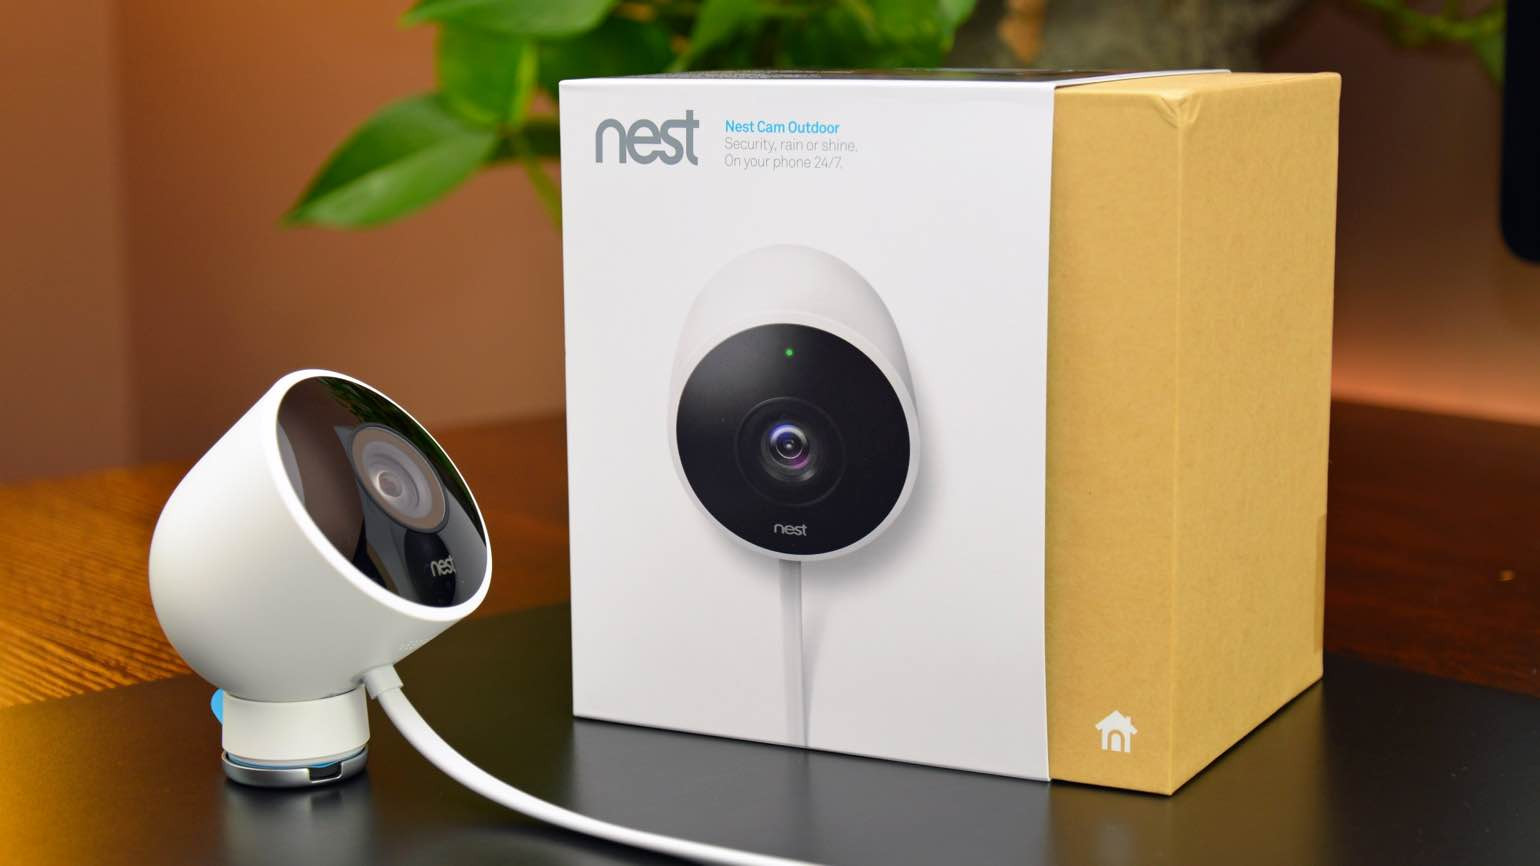 Best ideas about Nest Cam Outdoor Review
. Save or Pin Beveiligingscamera s Nest kunnen door lek worden Now.